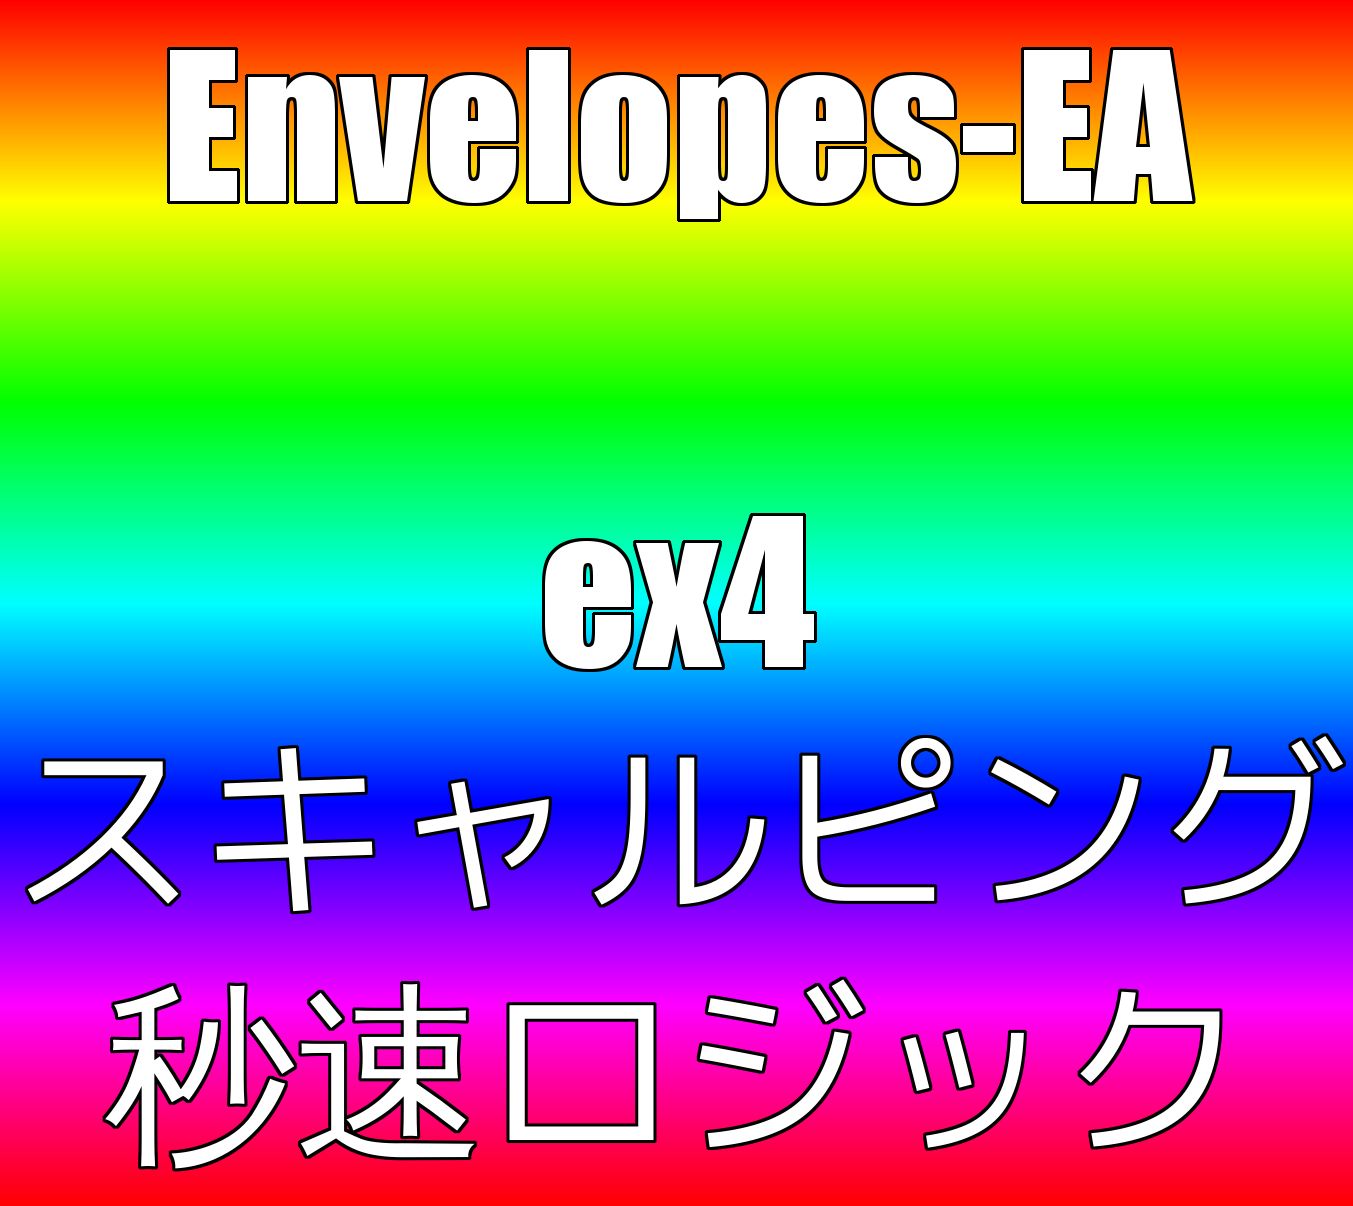 ENVELOPES-EA Auto Trading